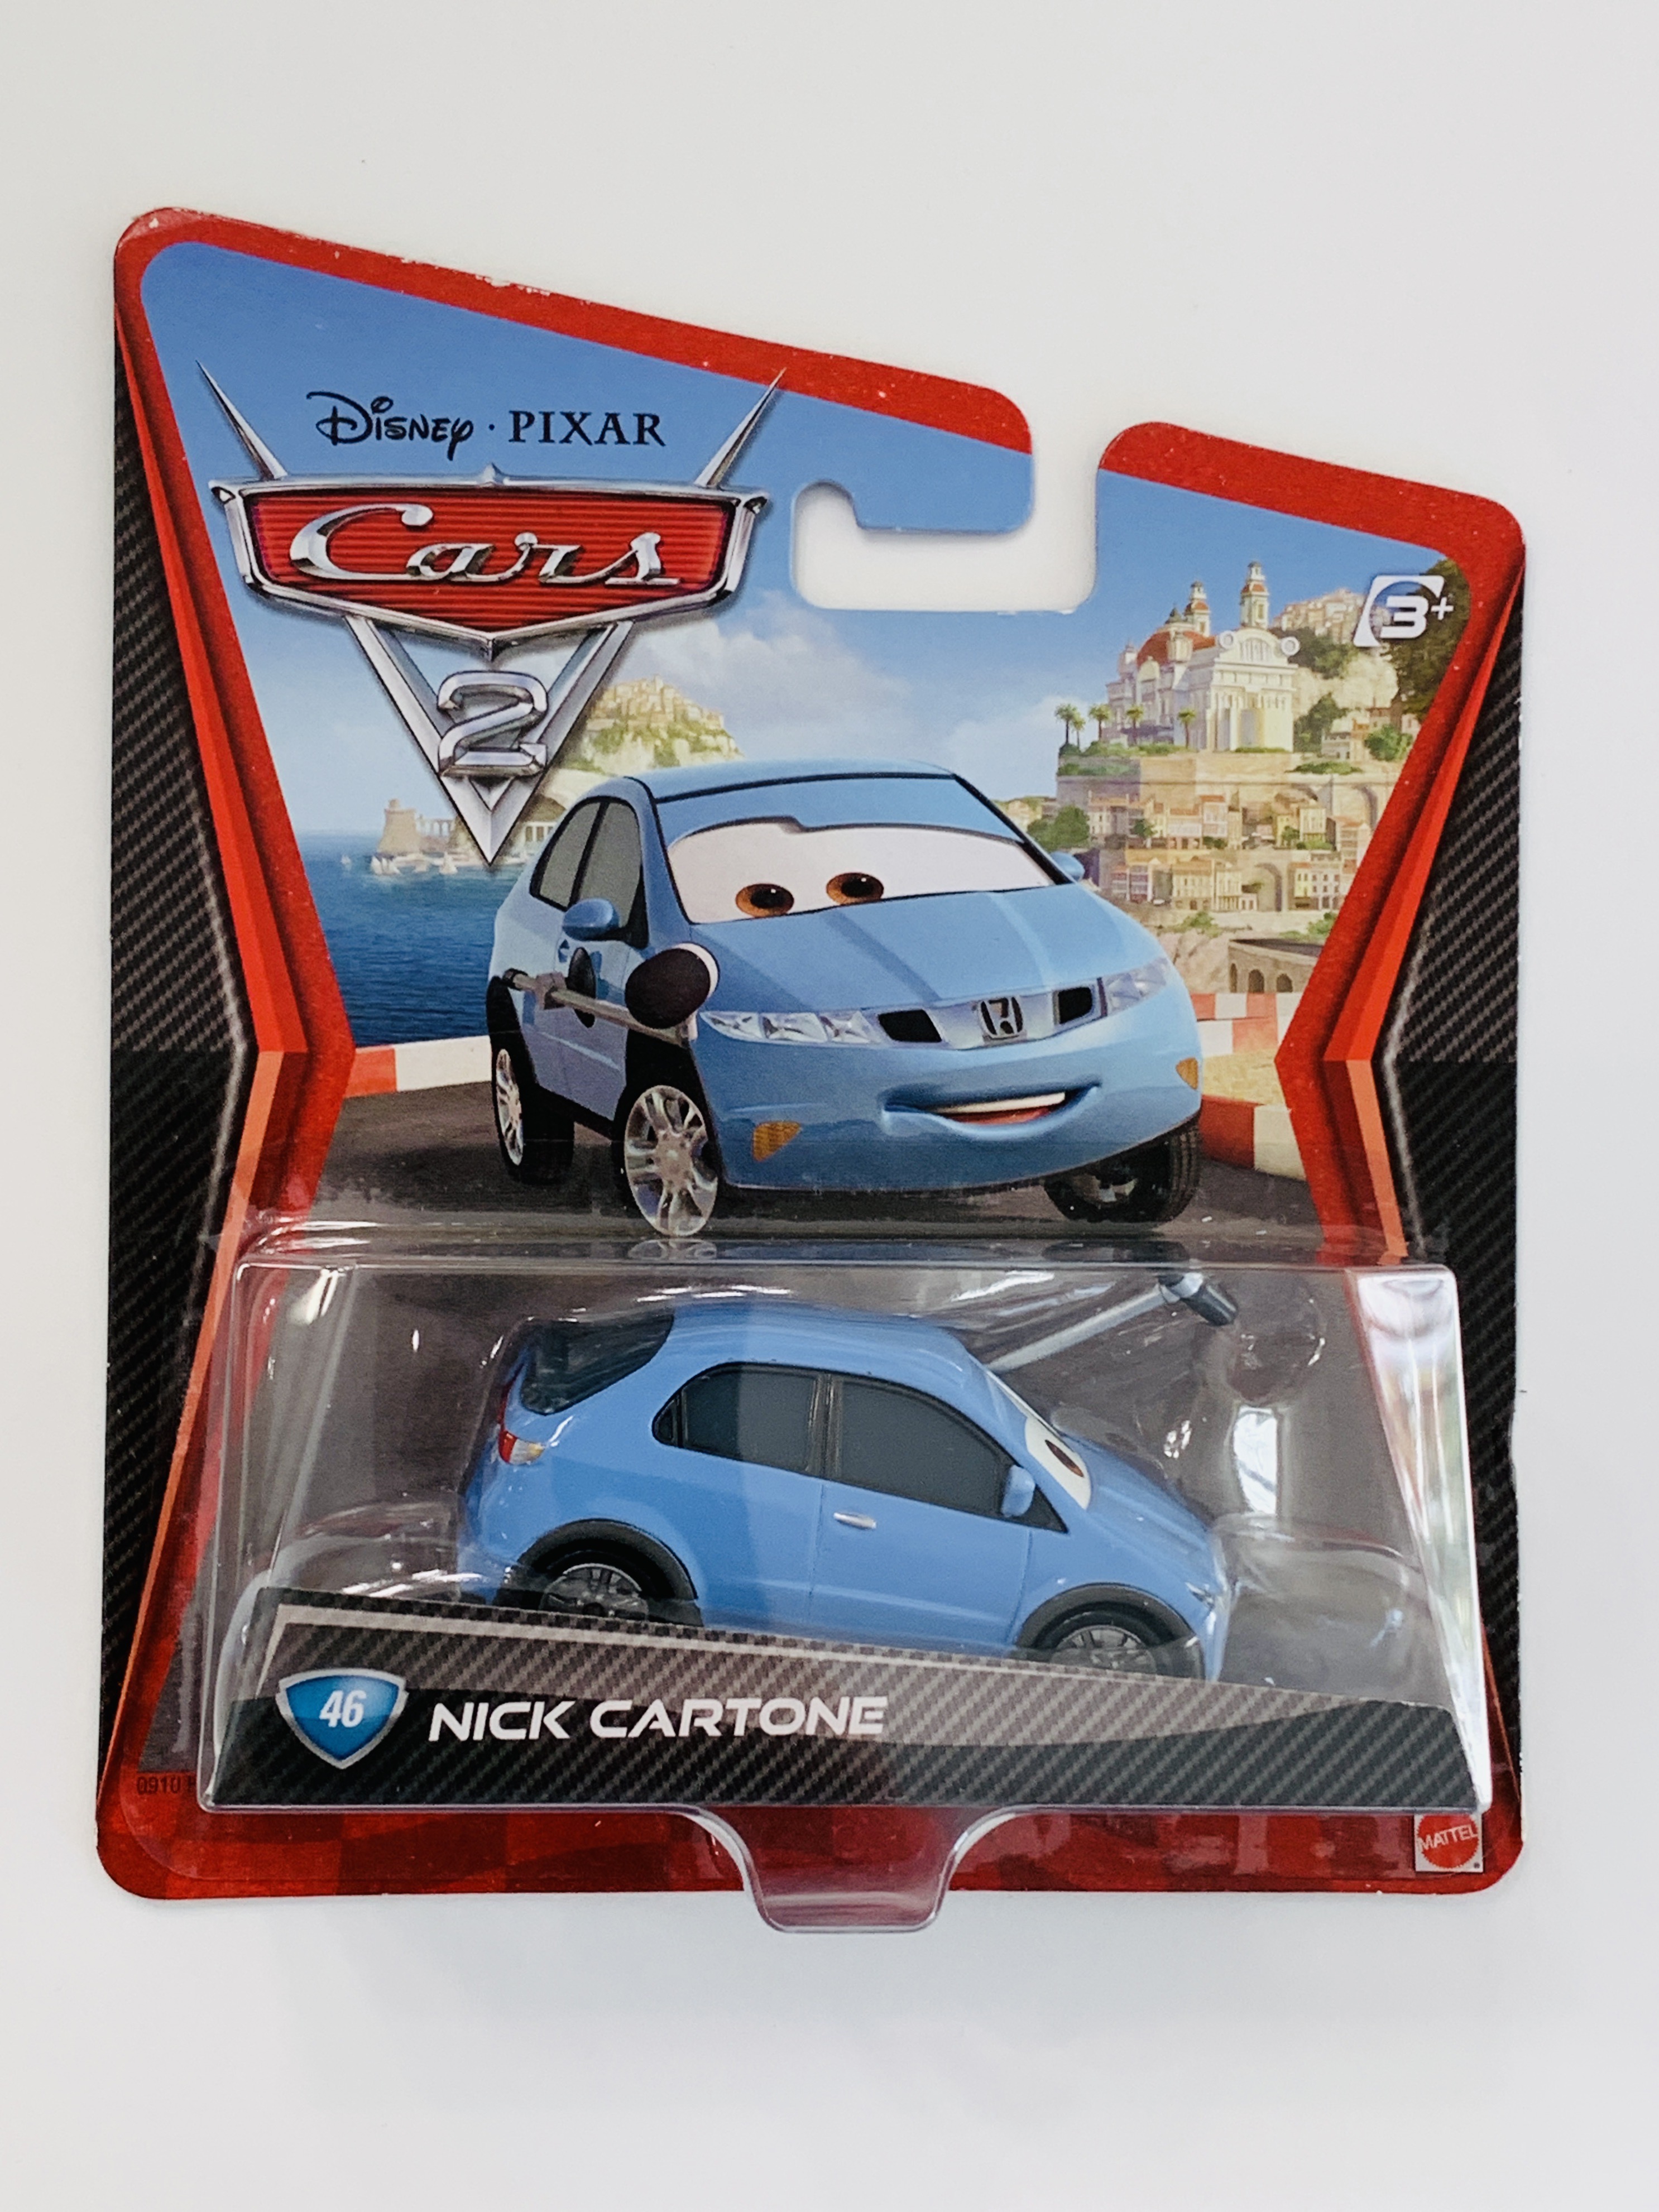 Disney Pixar Cars Nick Cartone